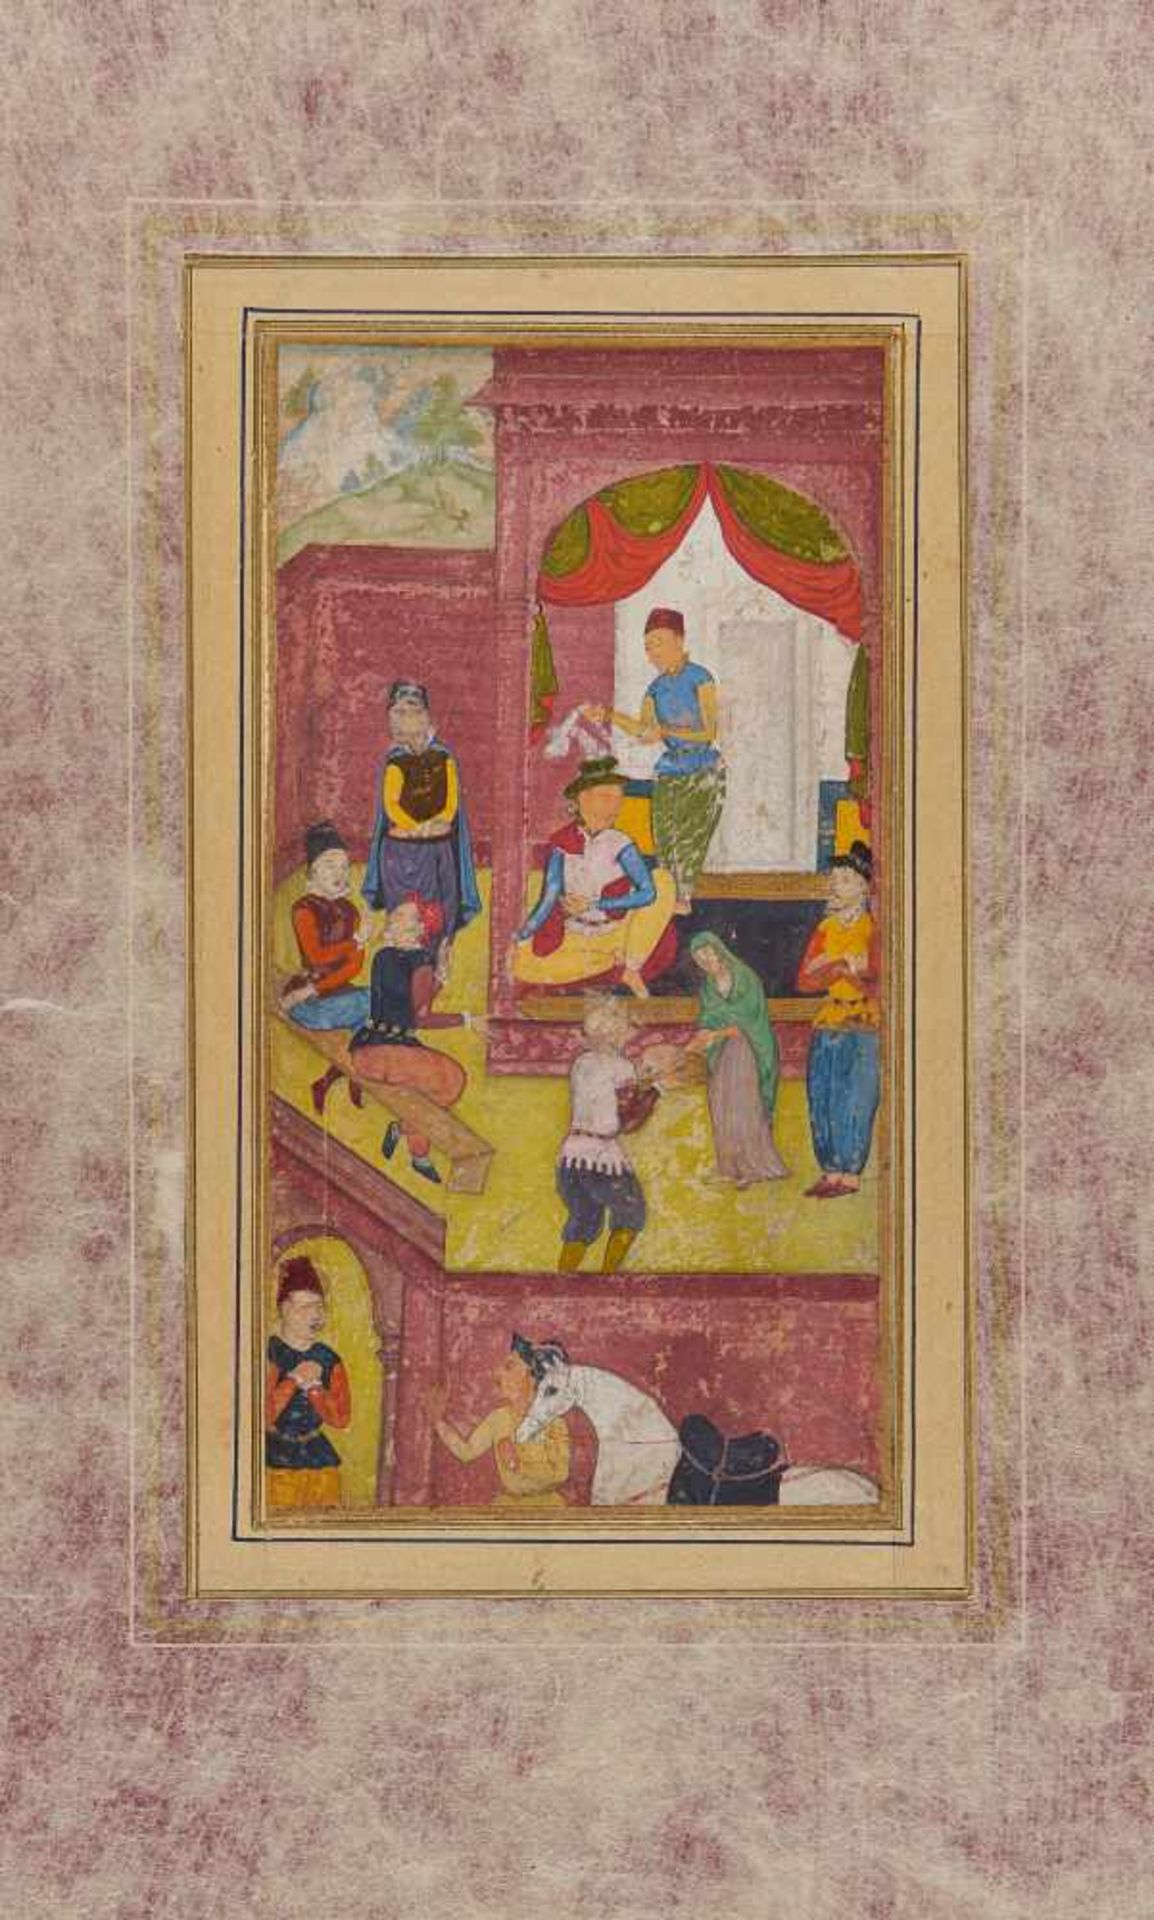 PALASTSZENE IM WESTEN. Moghul-Indien. 18. Jh. Pigmente und Gold auf Papier. Hinter einer Mauer mit